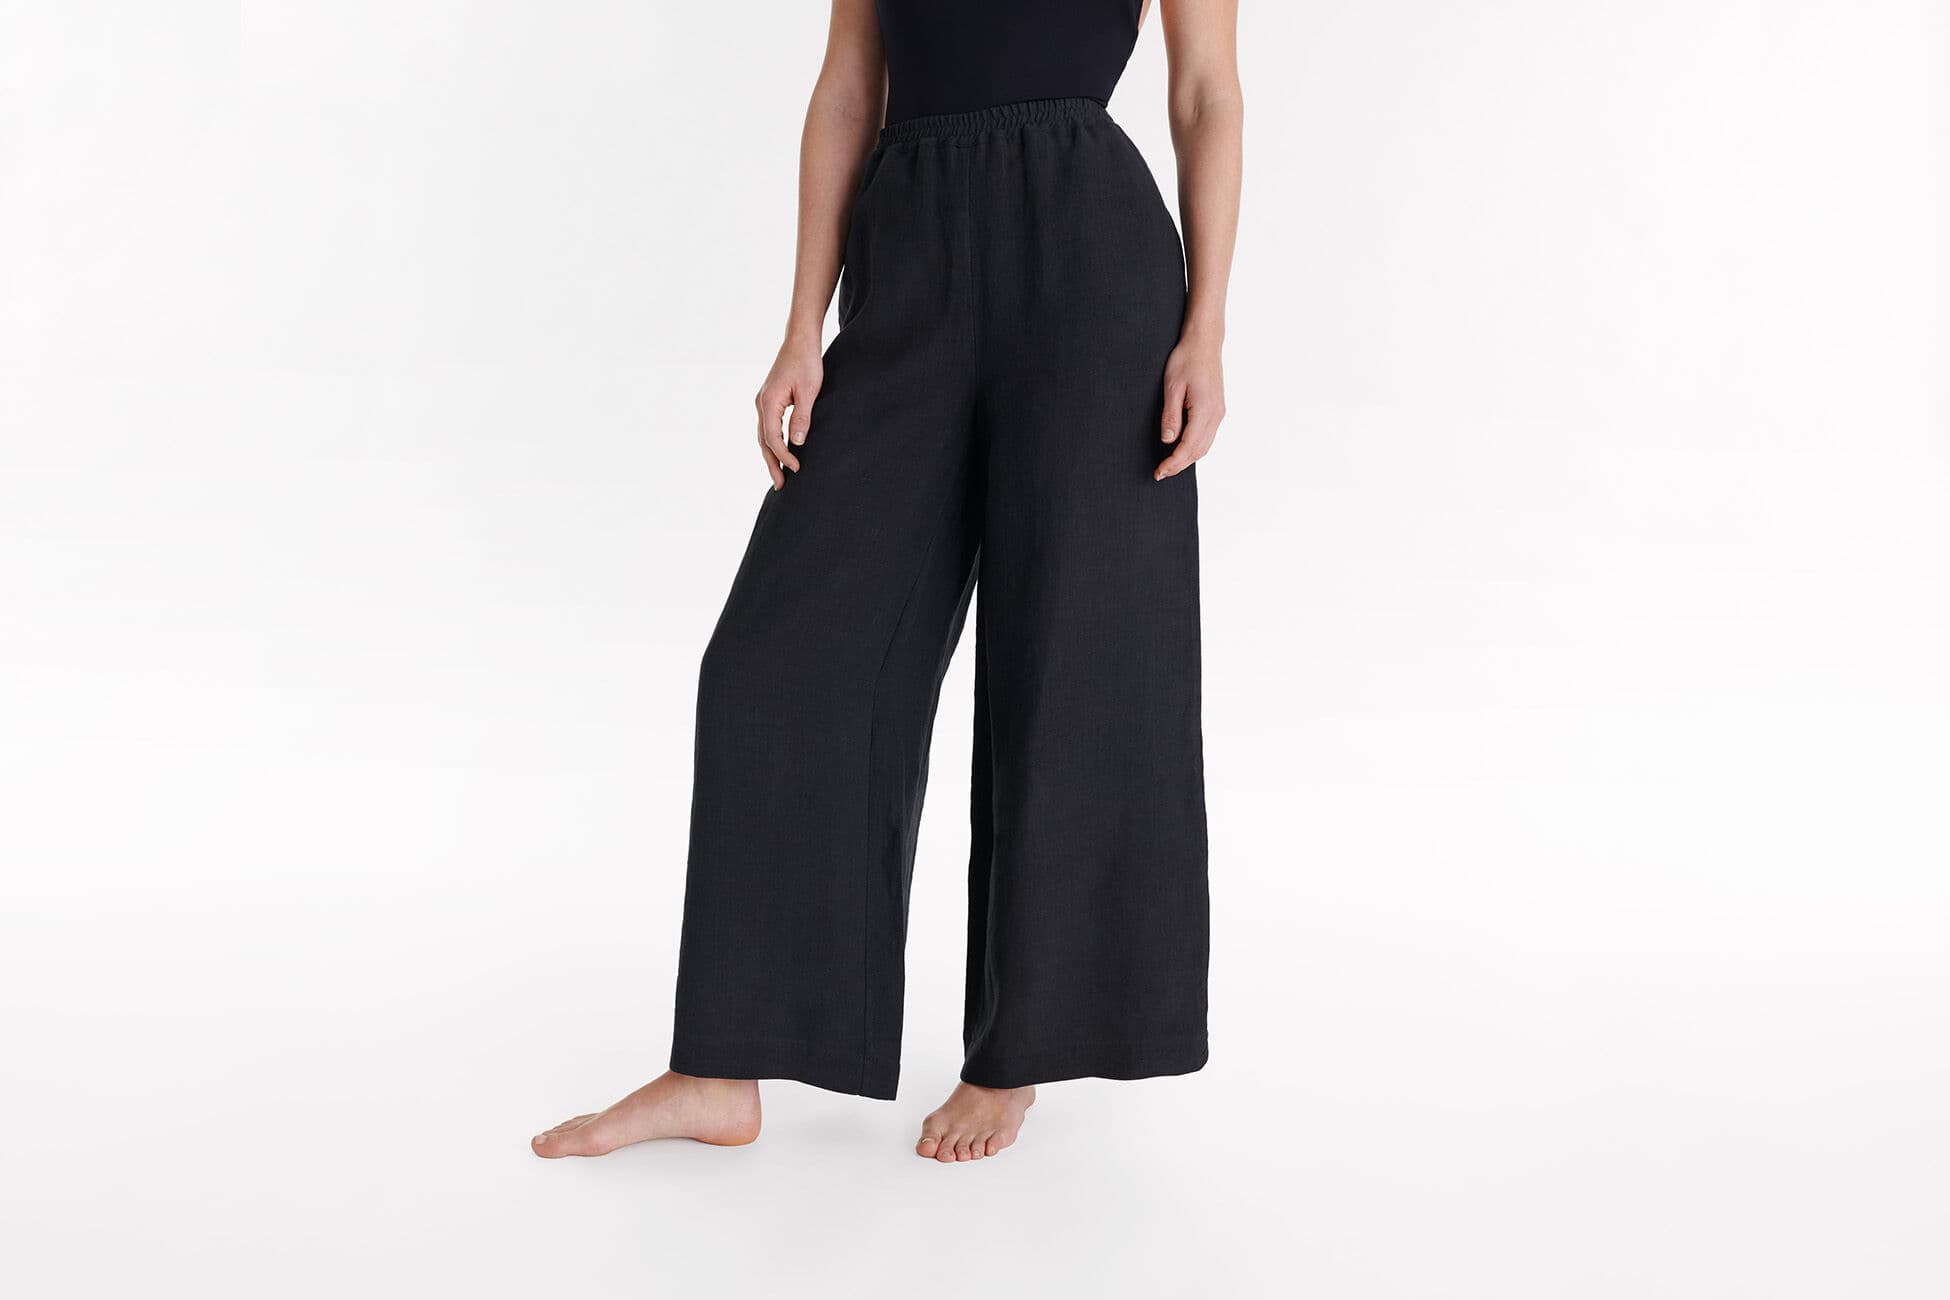 Select Pantalon large vue standard NaN